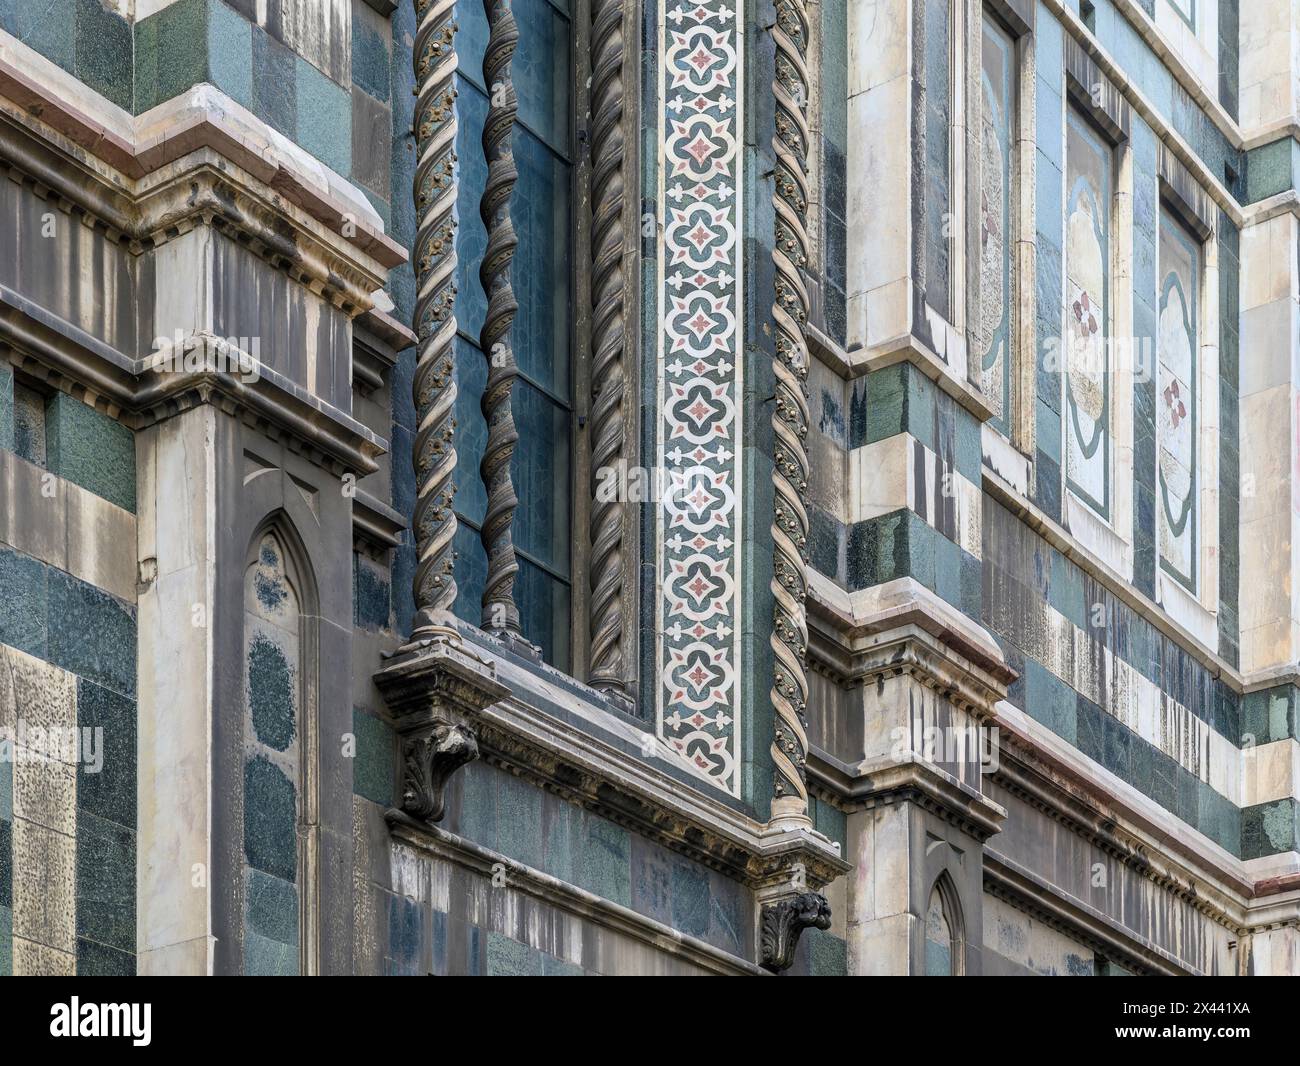 La spettacolare Cattedrale di Santa Maria del Fiore è probabilmente l'edificio più iconico nel centro di Firenze. Davvero mozzafiato! Foto Stock